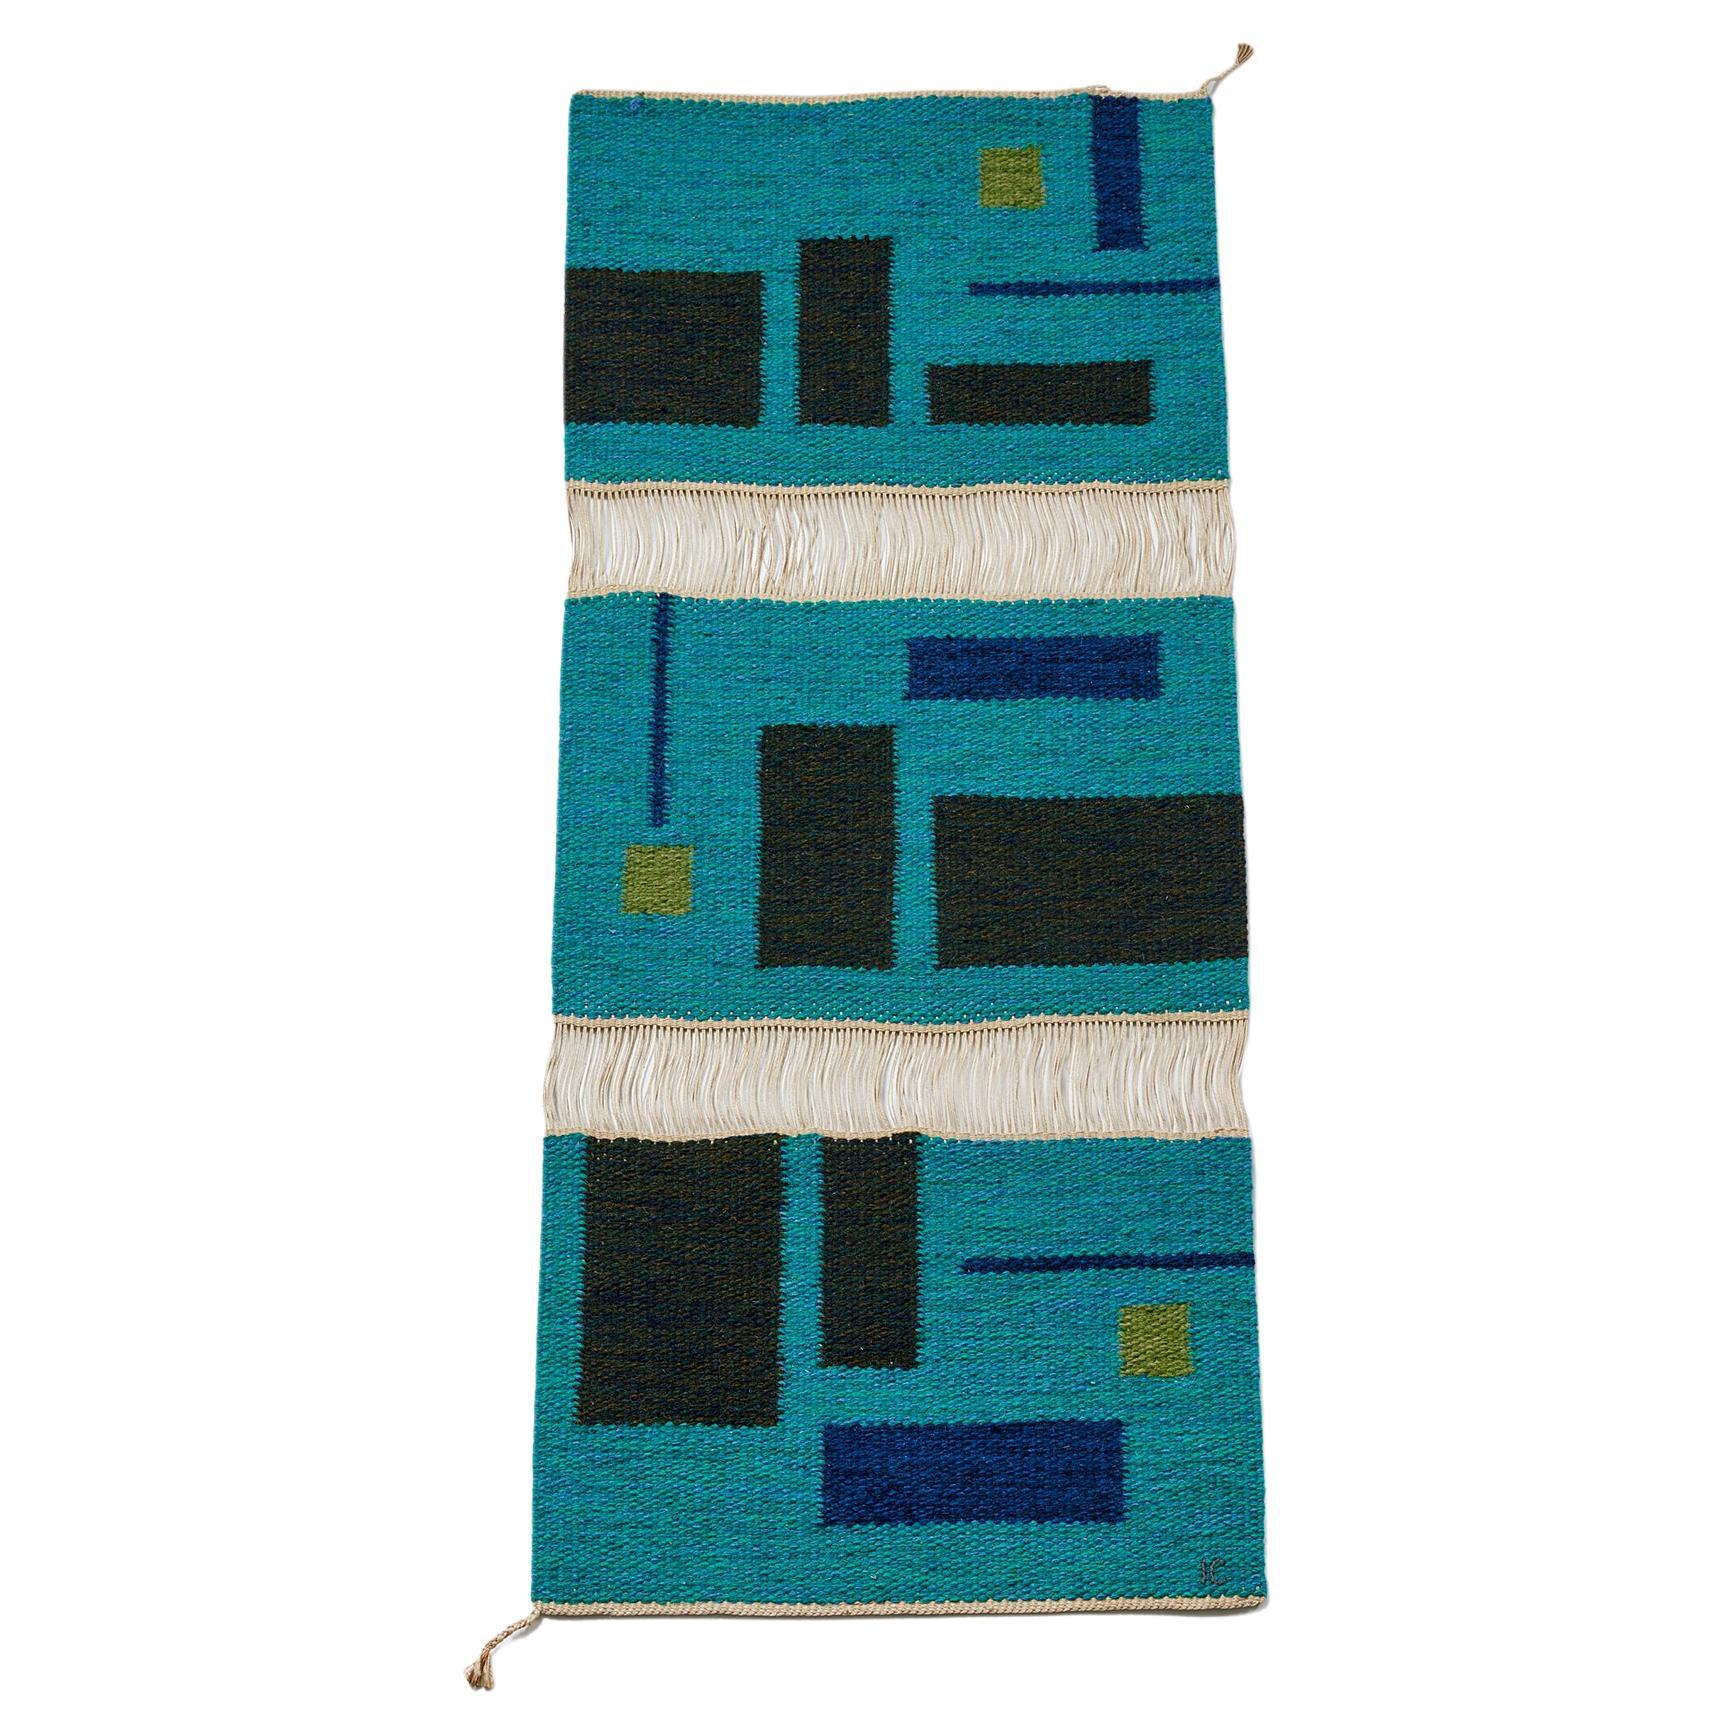 Tapestry ‘Vävnad’ Designed by Ingemar Callenberg for Gammelstads Handväveri AB